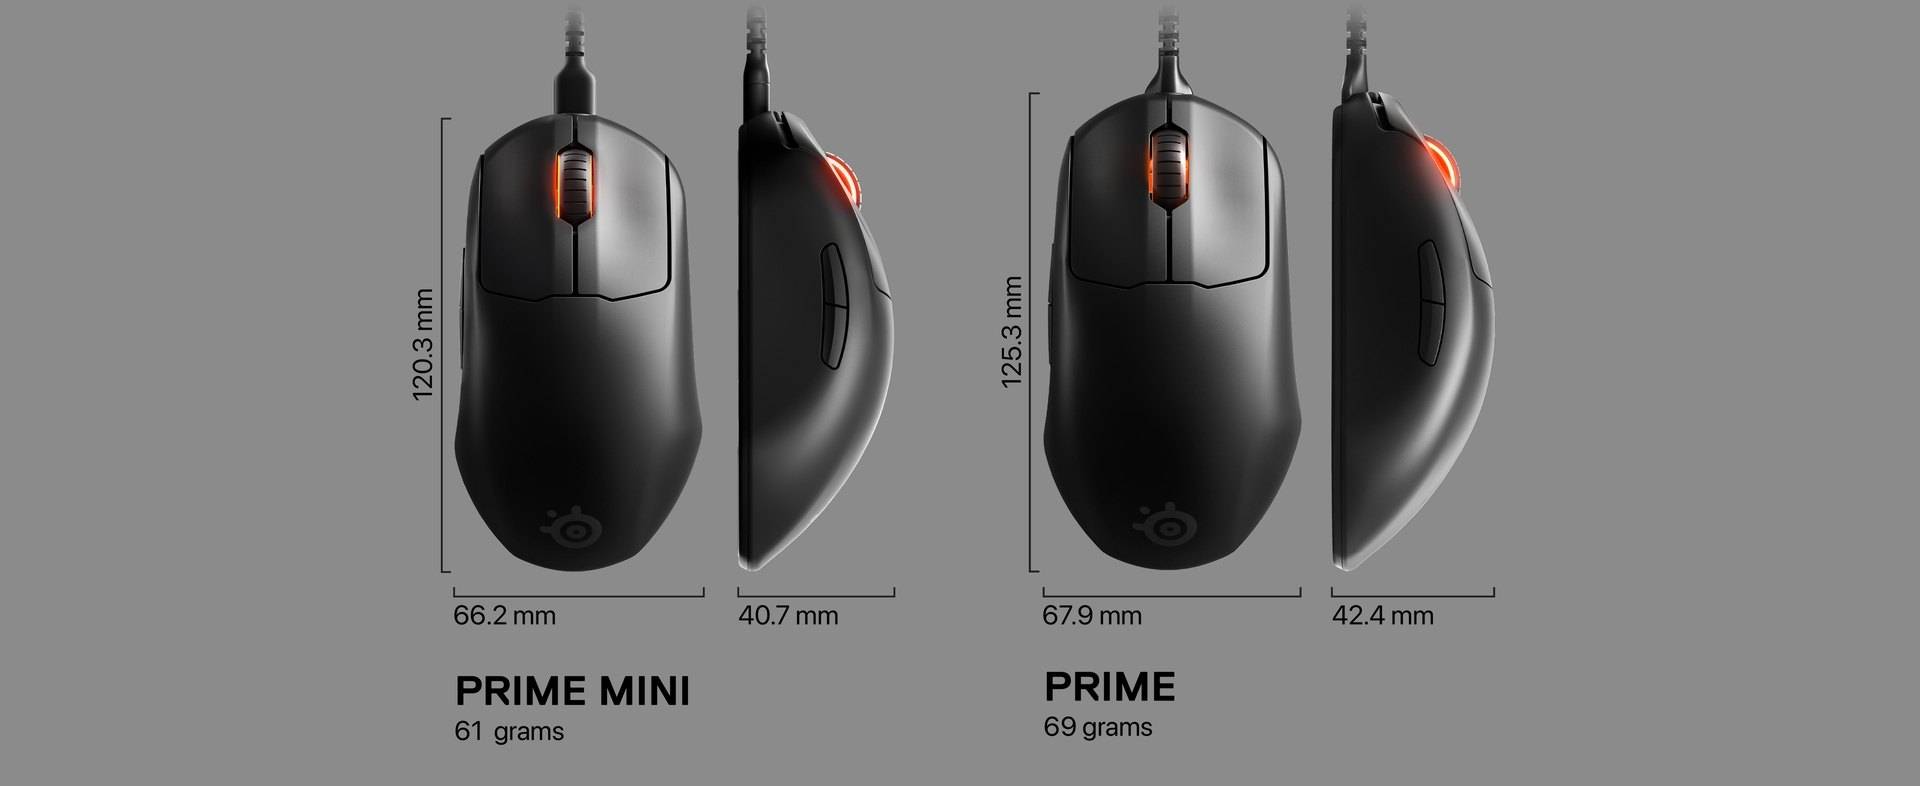 prime prime mini